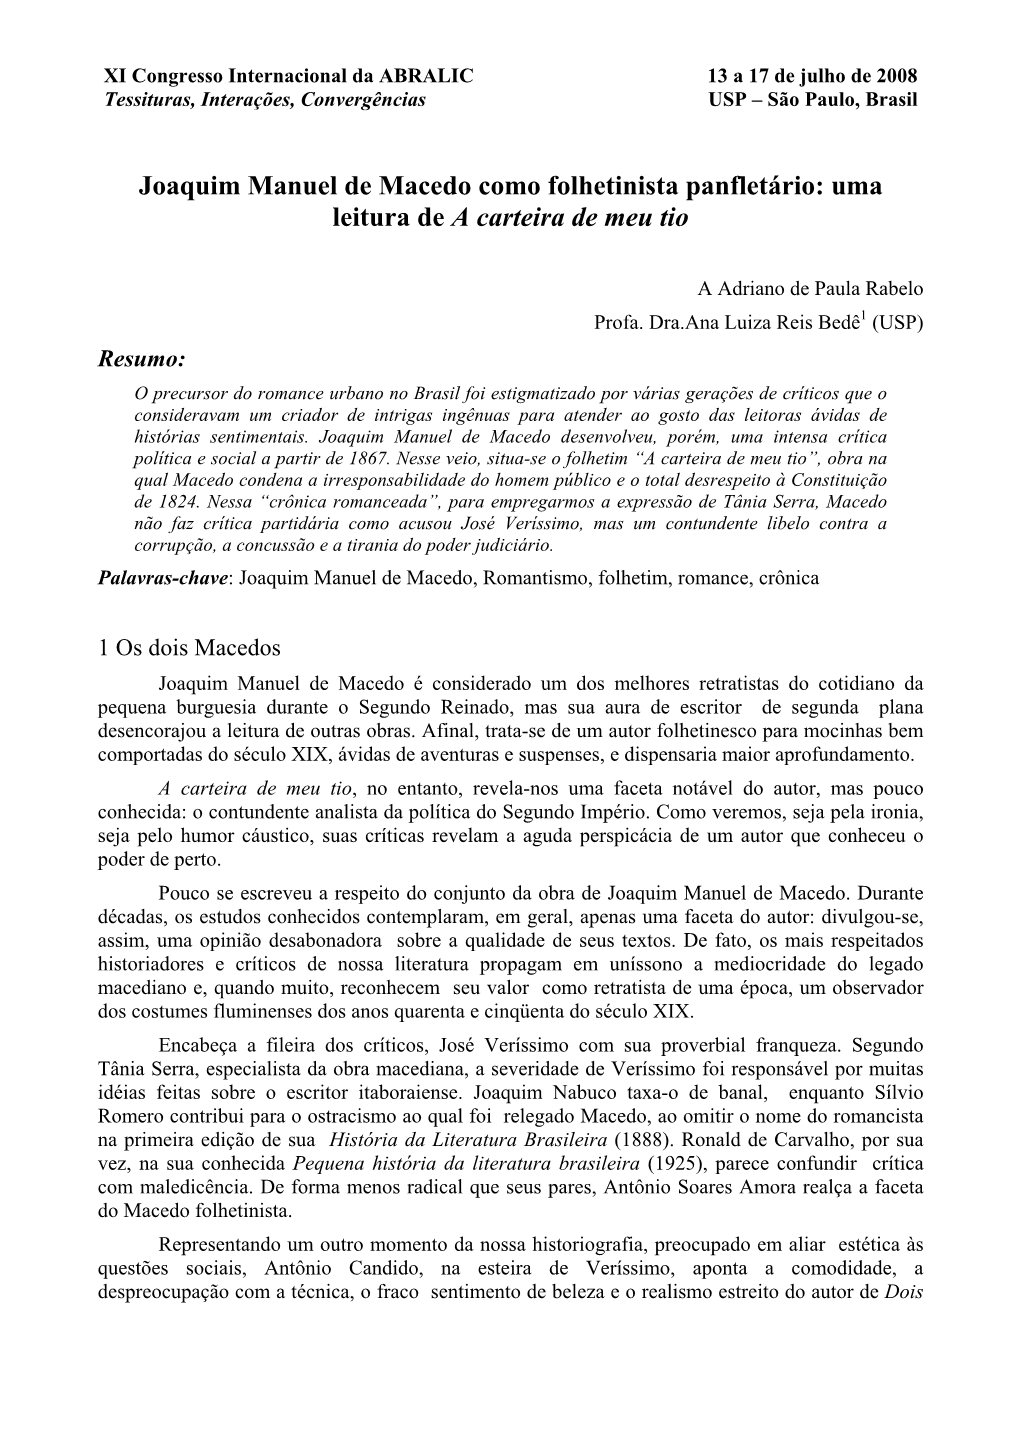 Joaquim Manuel De Macedo Como Folhetinista Panfletário: Uma Leitura De a Carteira De Meu Tio